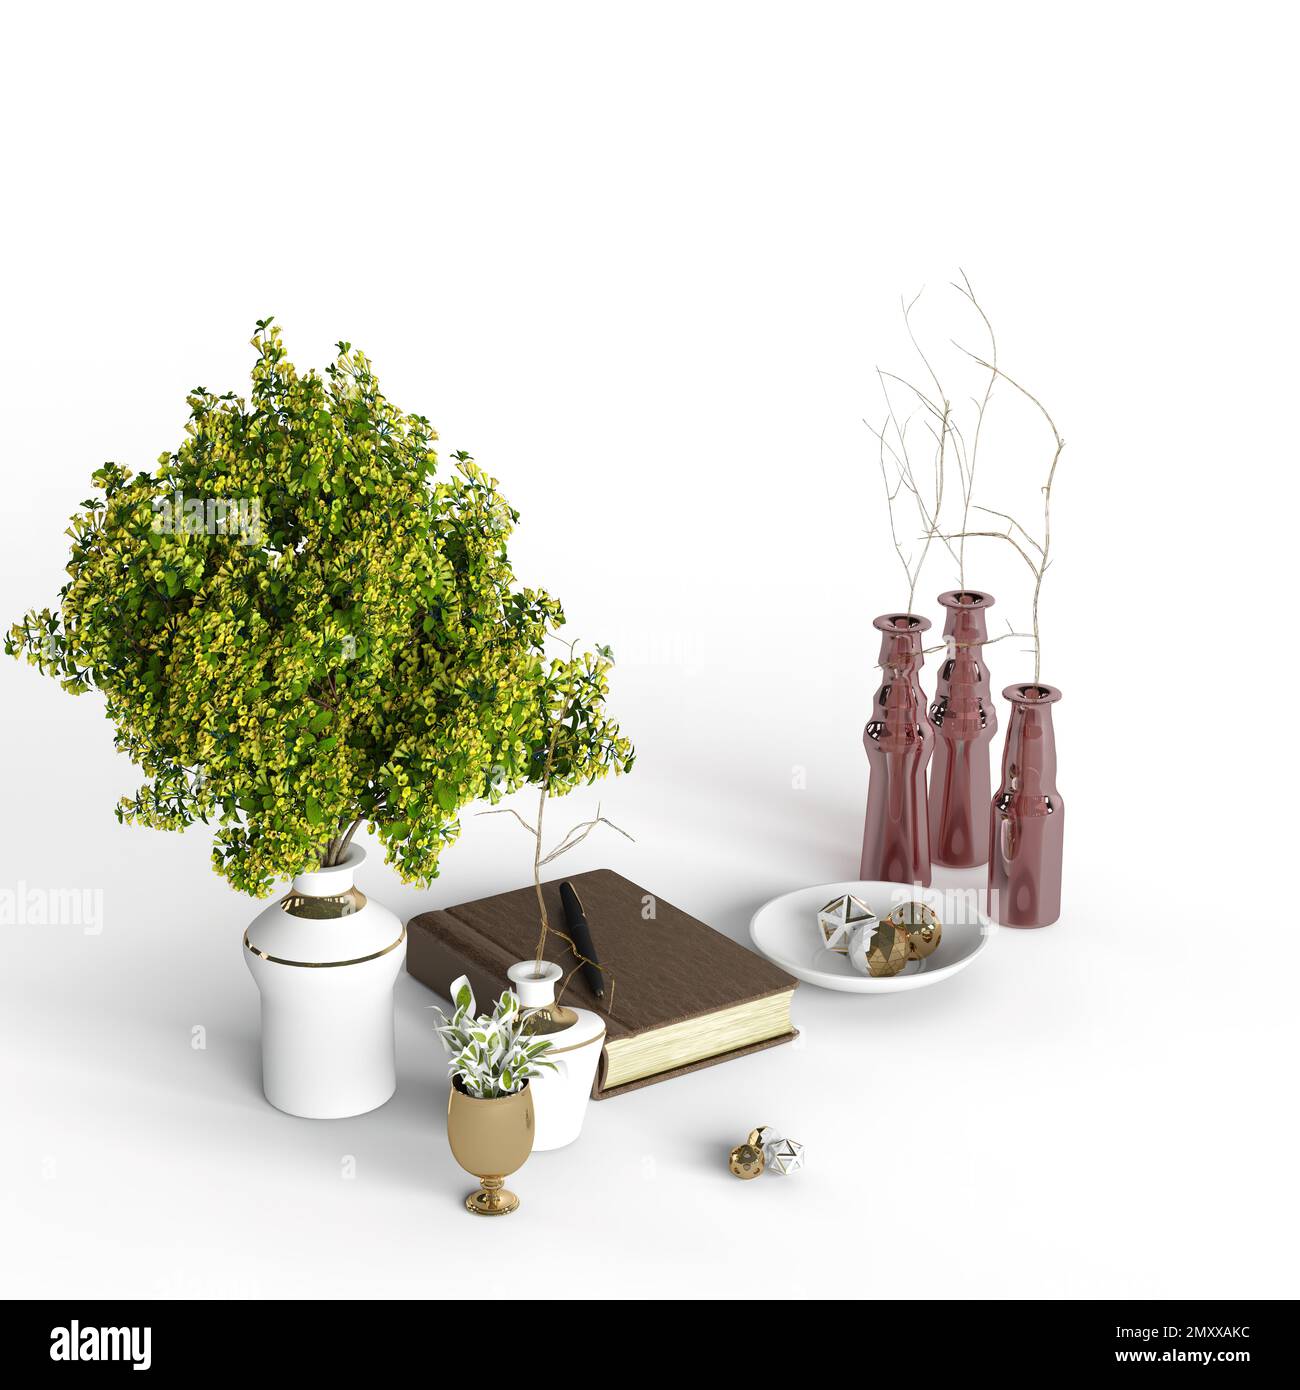 Un'illustrazione digitale di vasi da fiori, piante, un libro e altri elementi interni su sfondo bianco Foto Stock